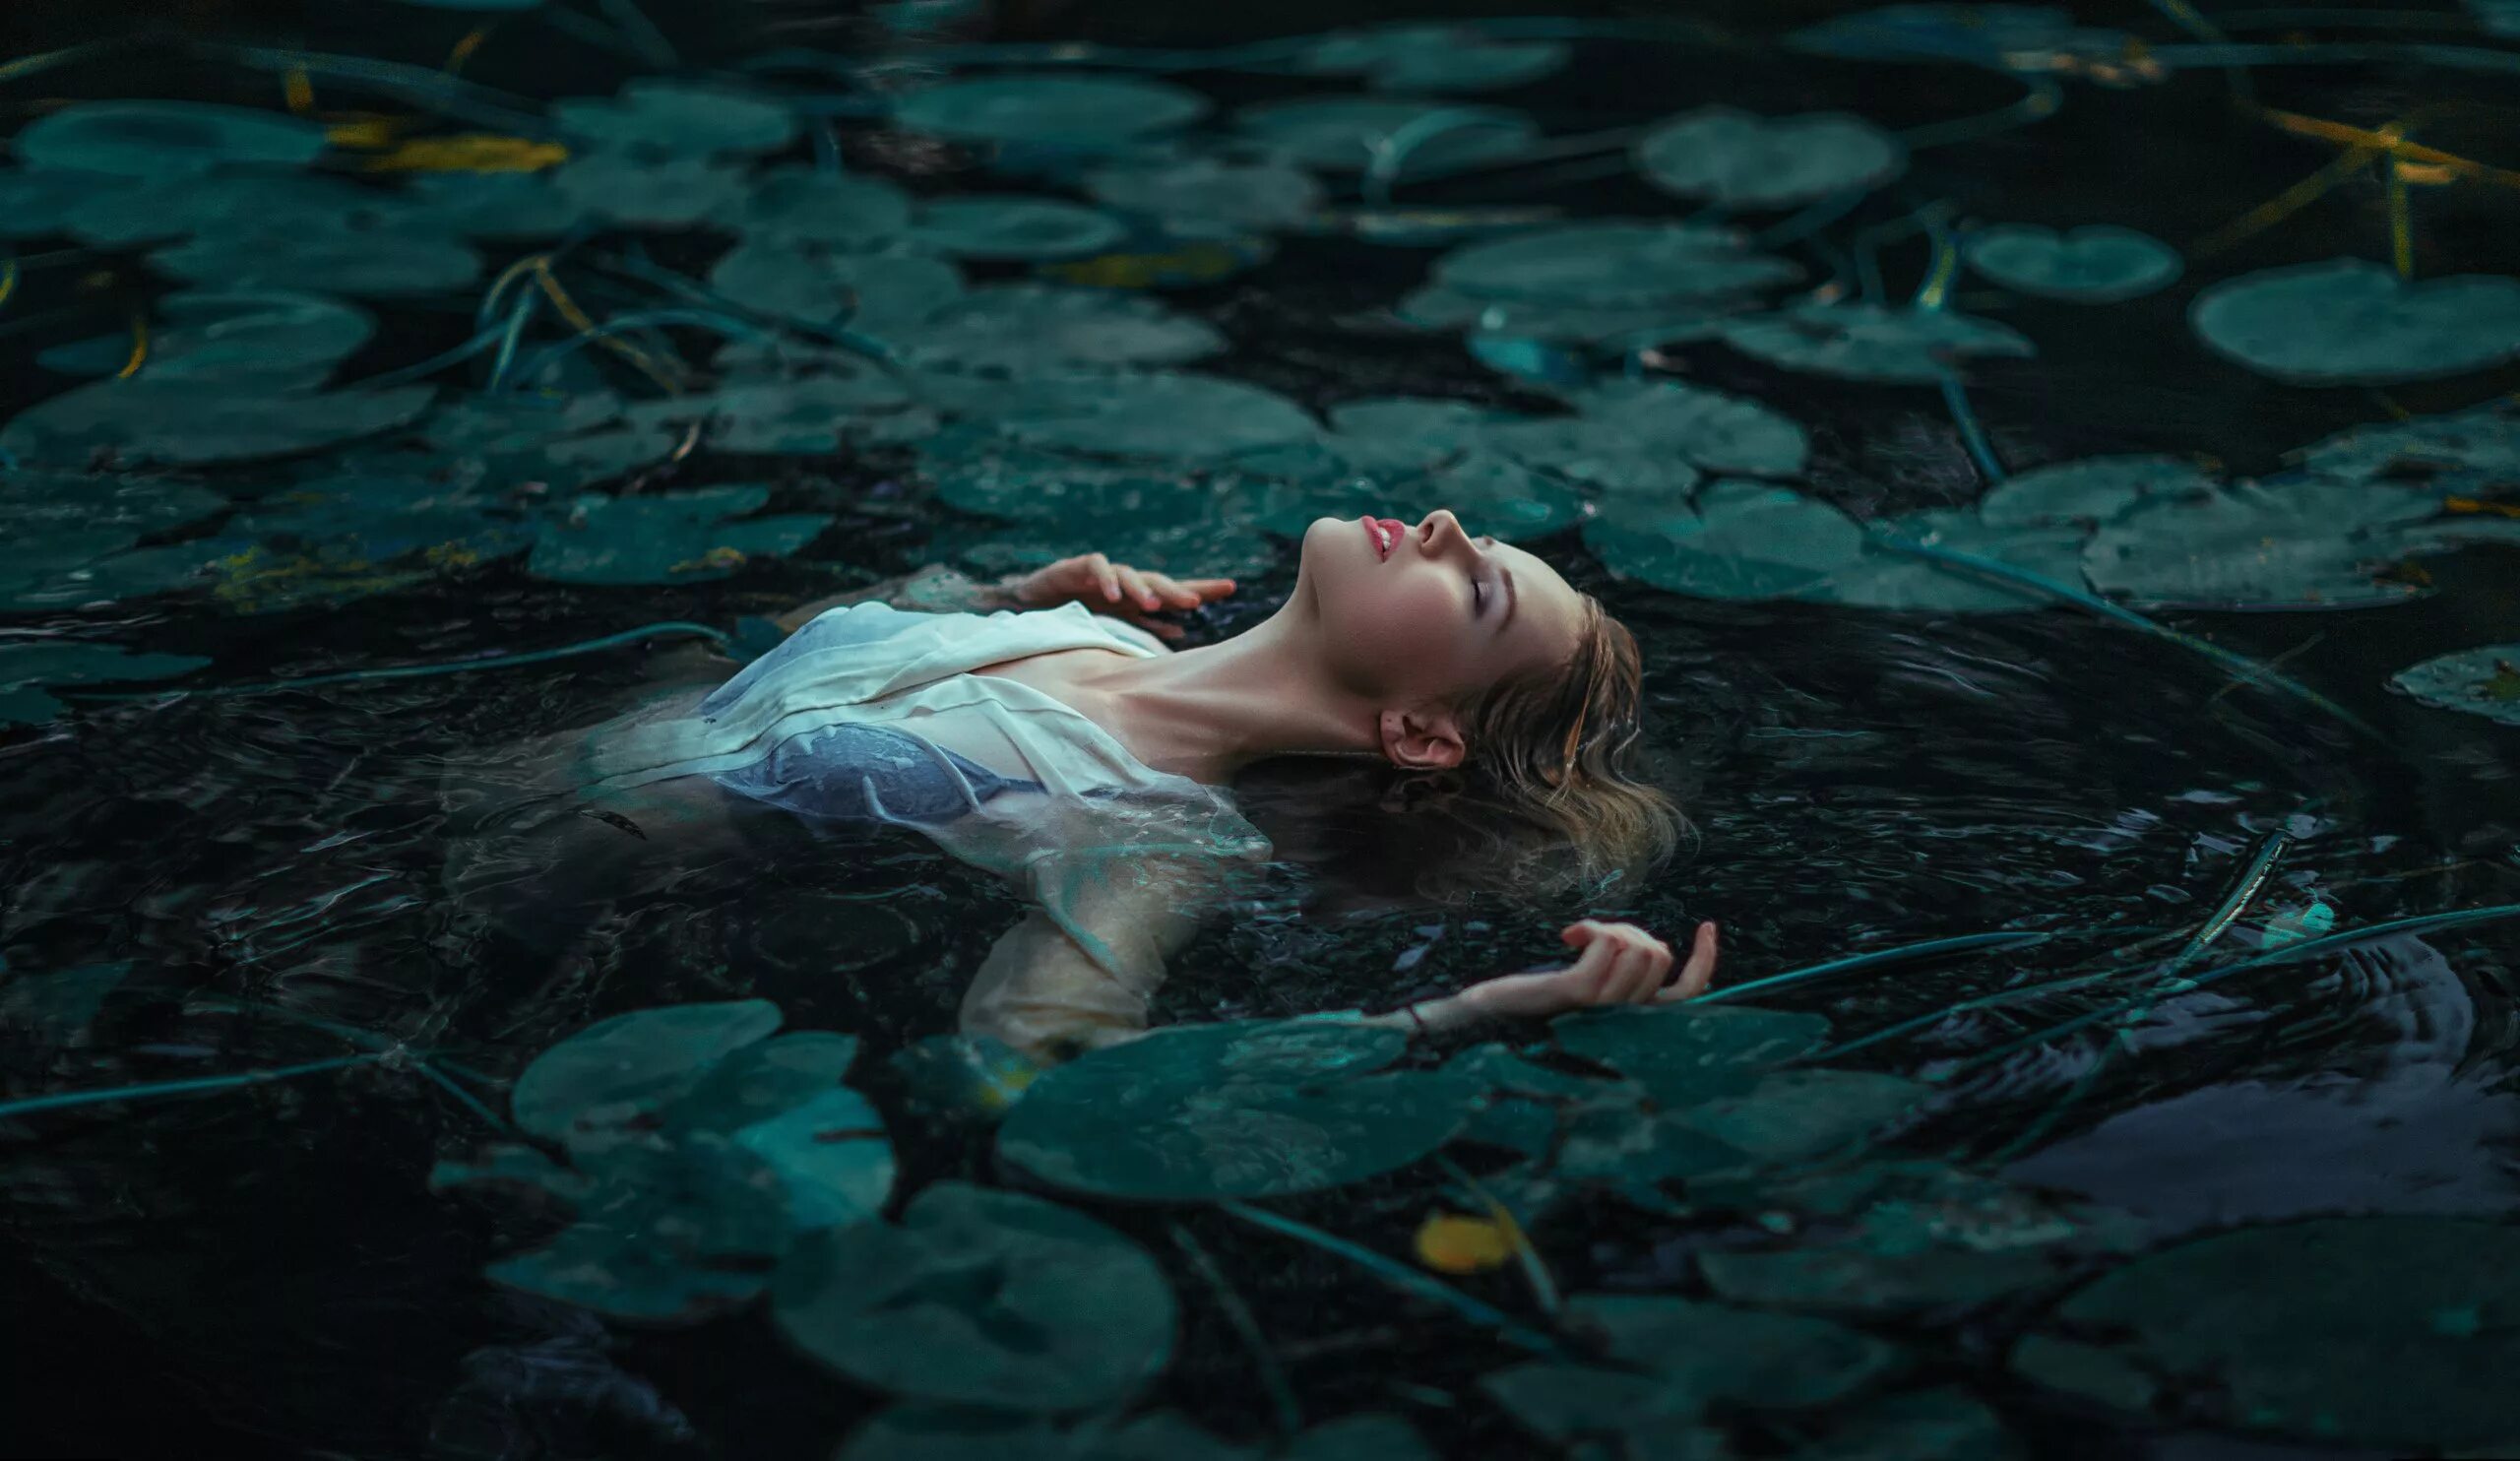 Русалка Утопленница. Девушка в воде. Фотосессия в воде. Девушка лежит в воде. Погрузиться в размышления